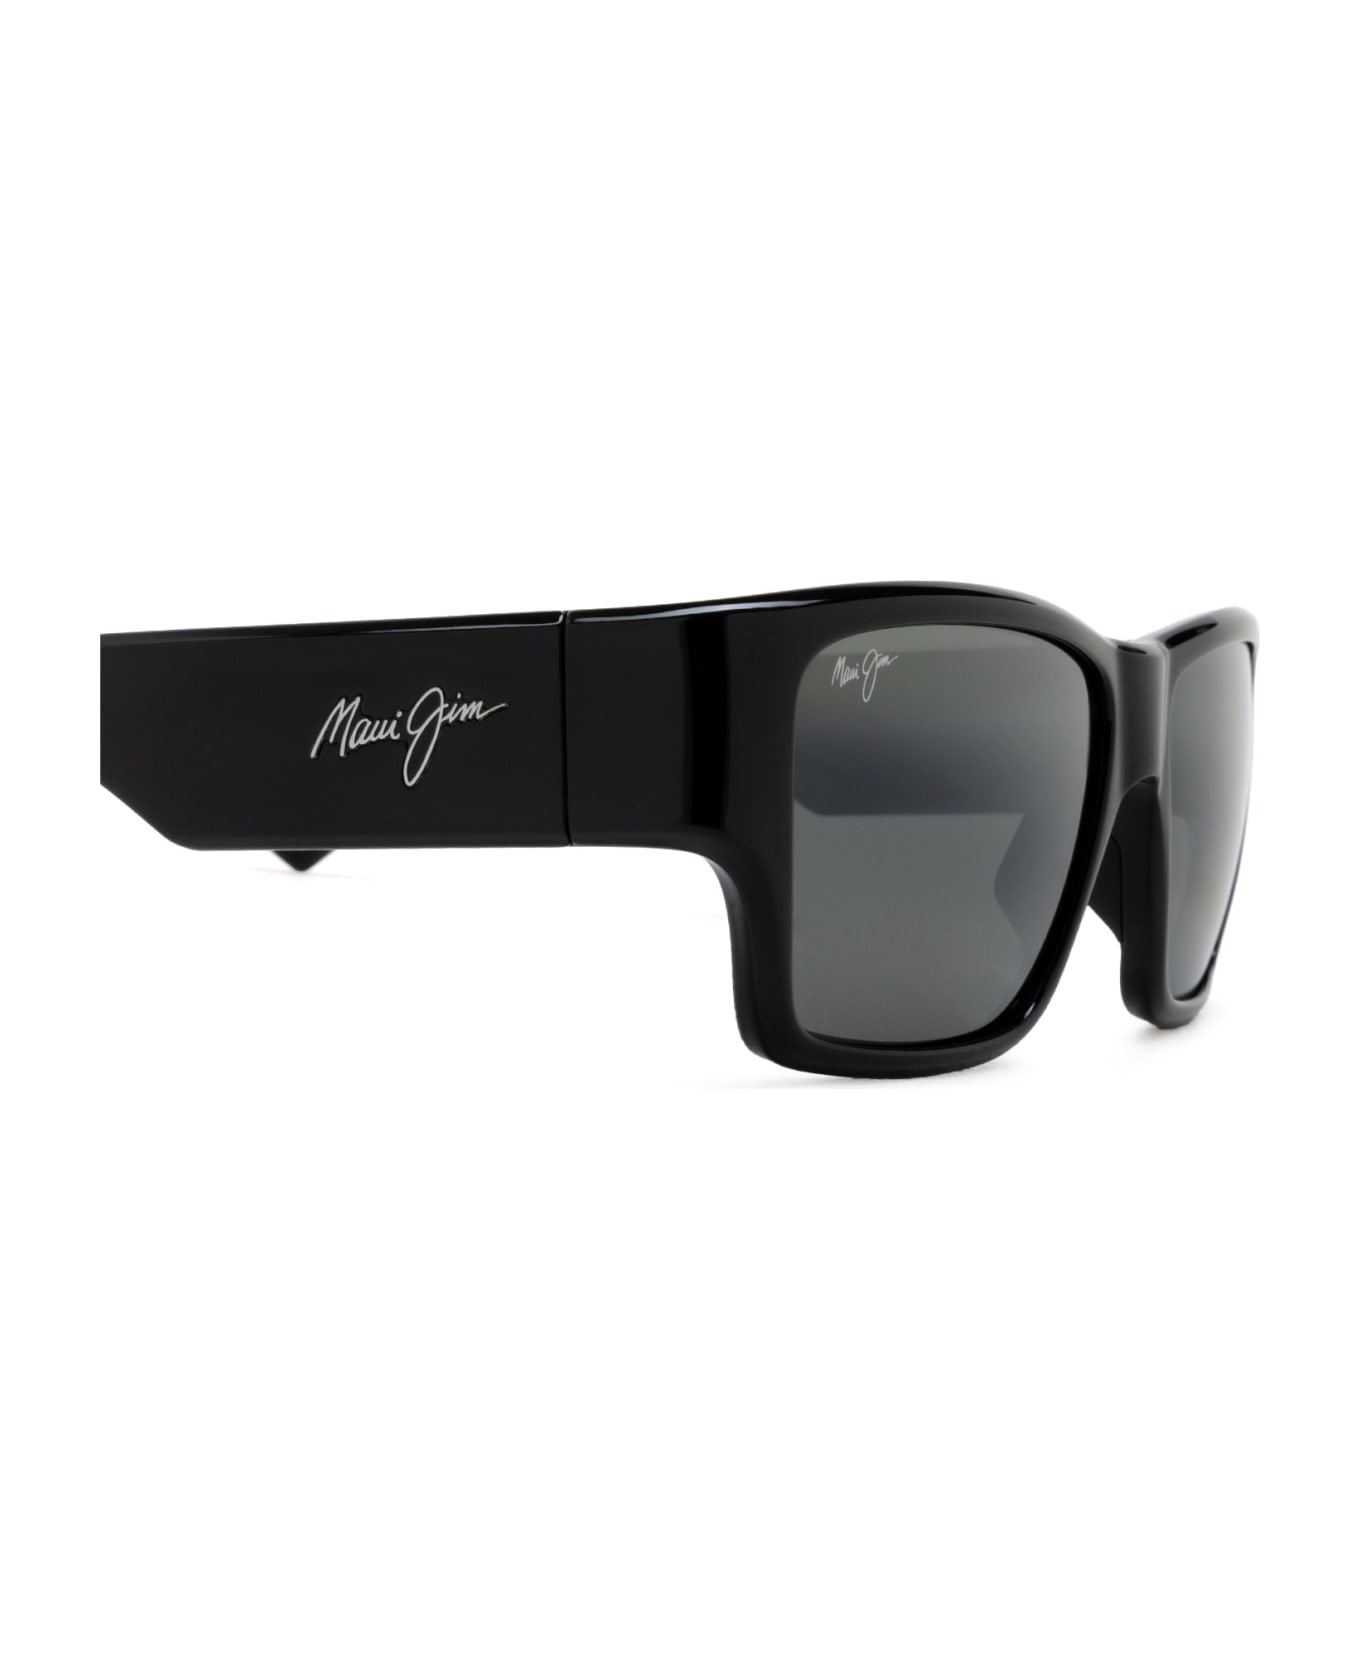 Maui Jim Mj614 Shiny Black Sunglasses - Shiny Black サングラス